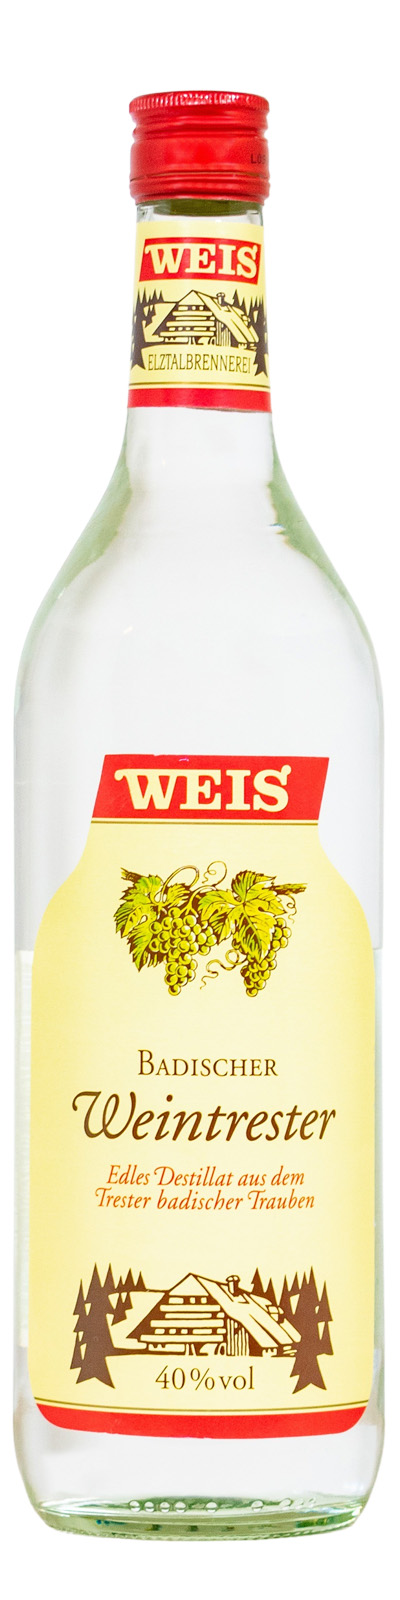 Weis Badischer Weintrester - 1 Liter 40% vol